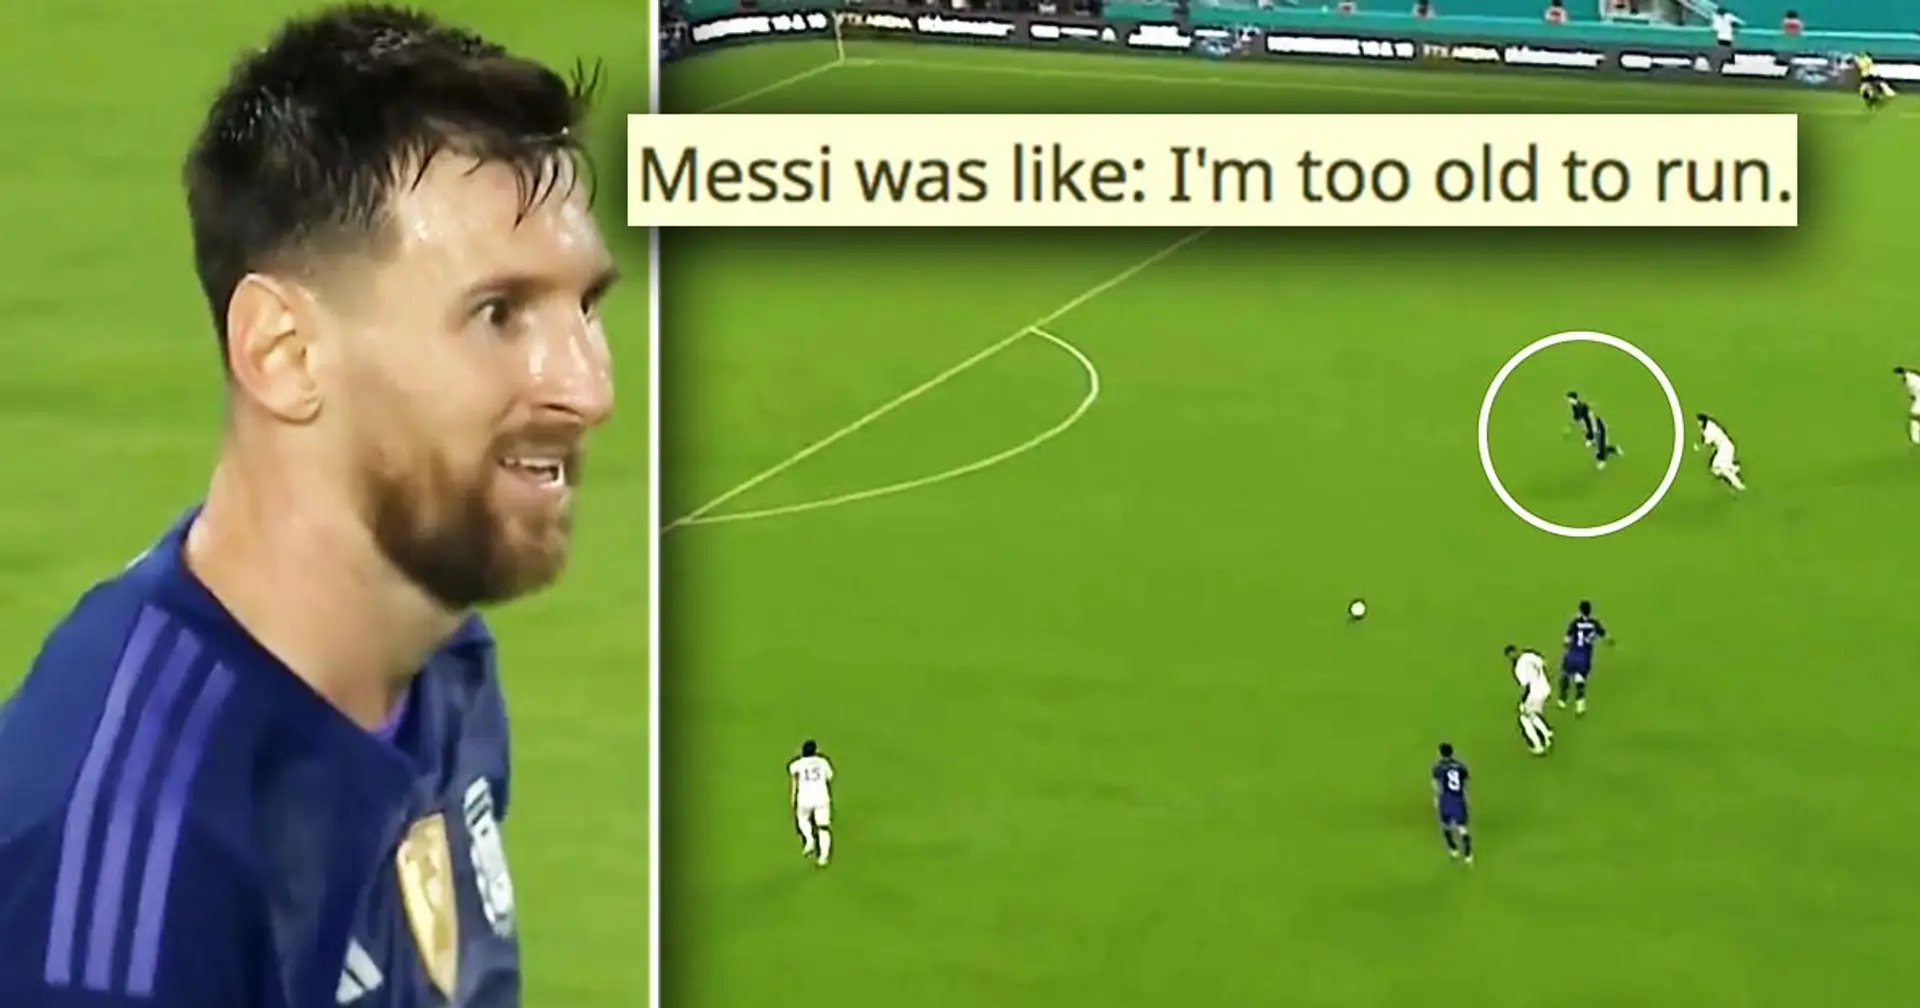 Messi marque un but fabuleux avec l'Argentine, les fans se demandent comment c'est possible